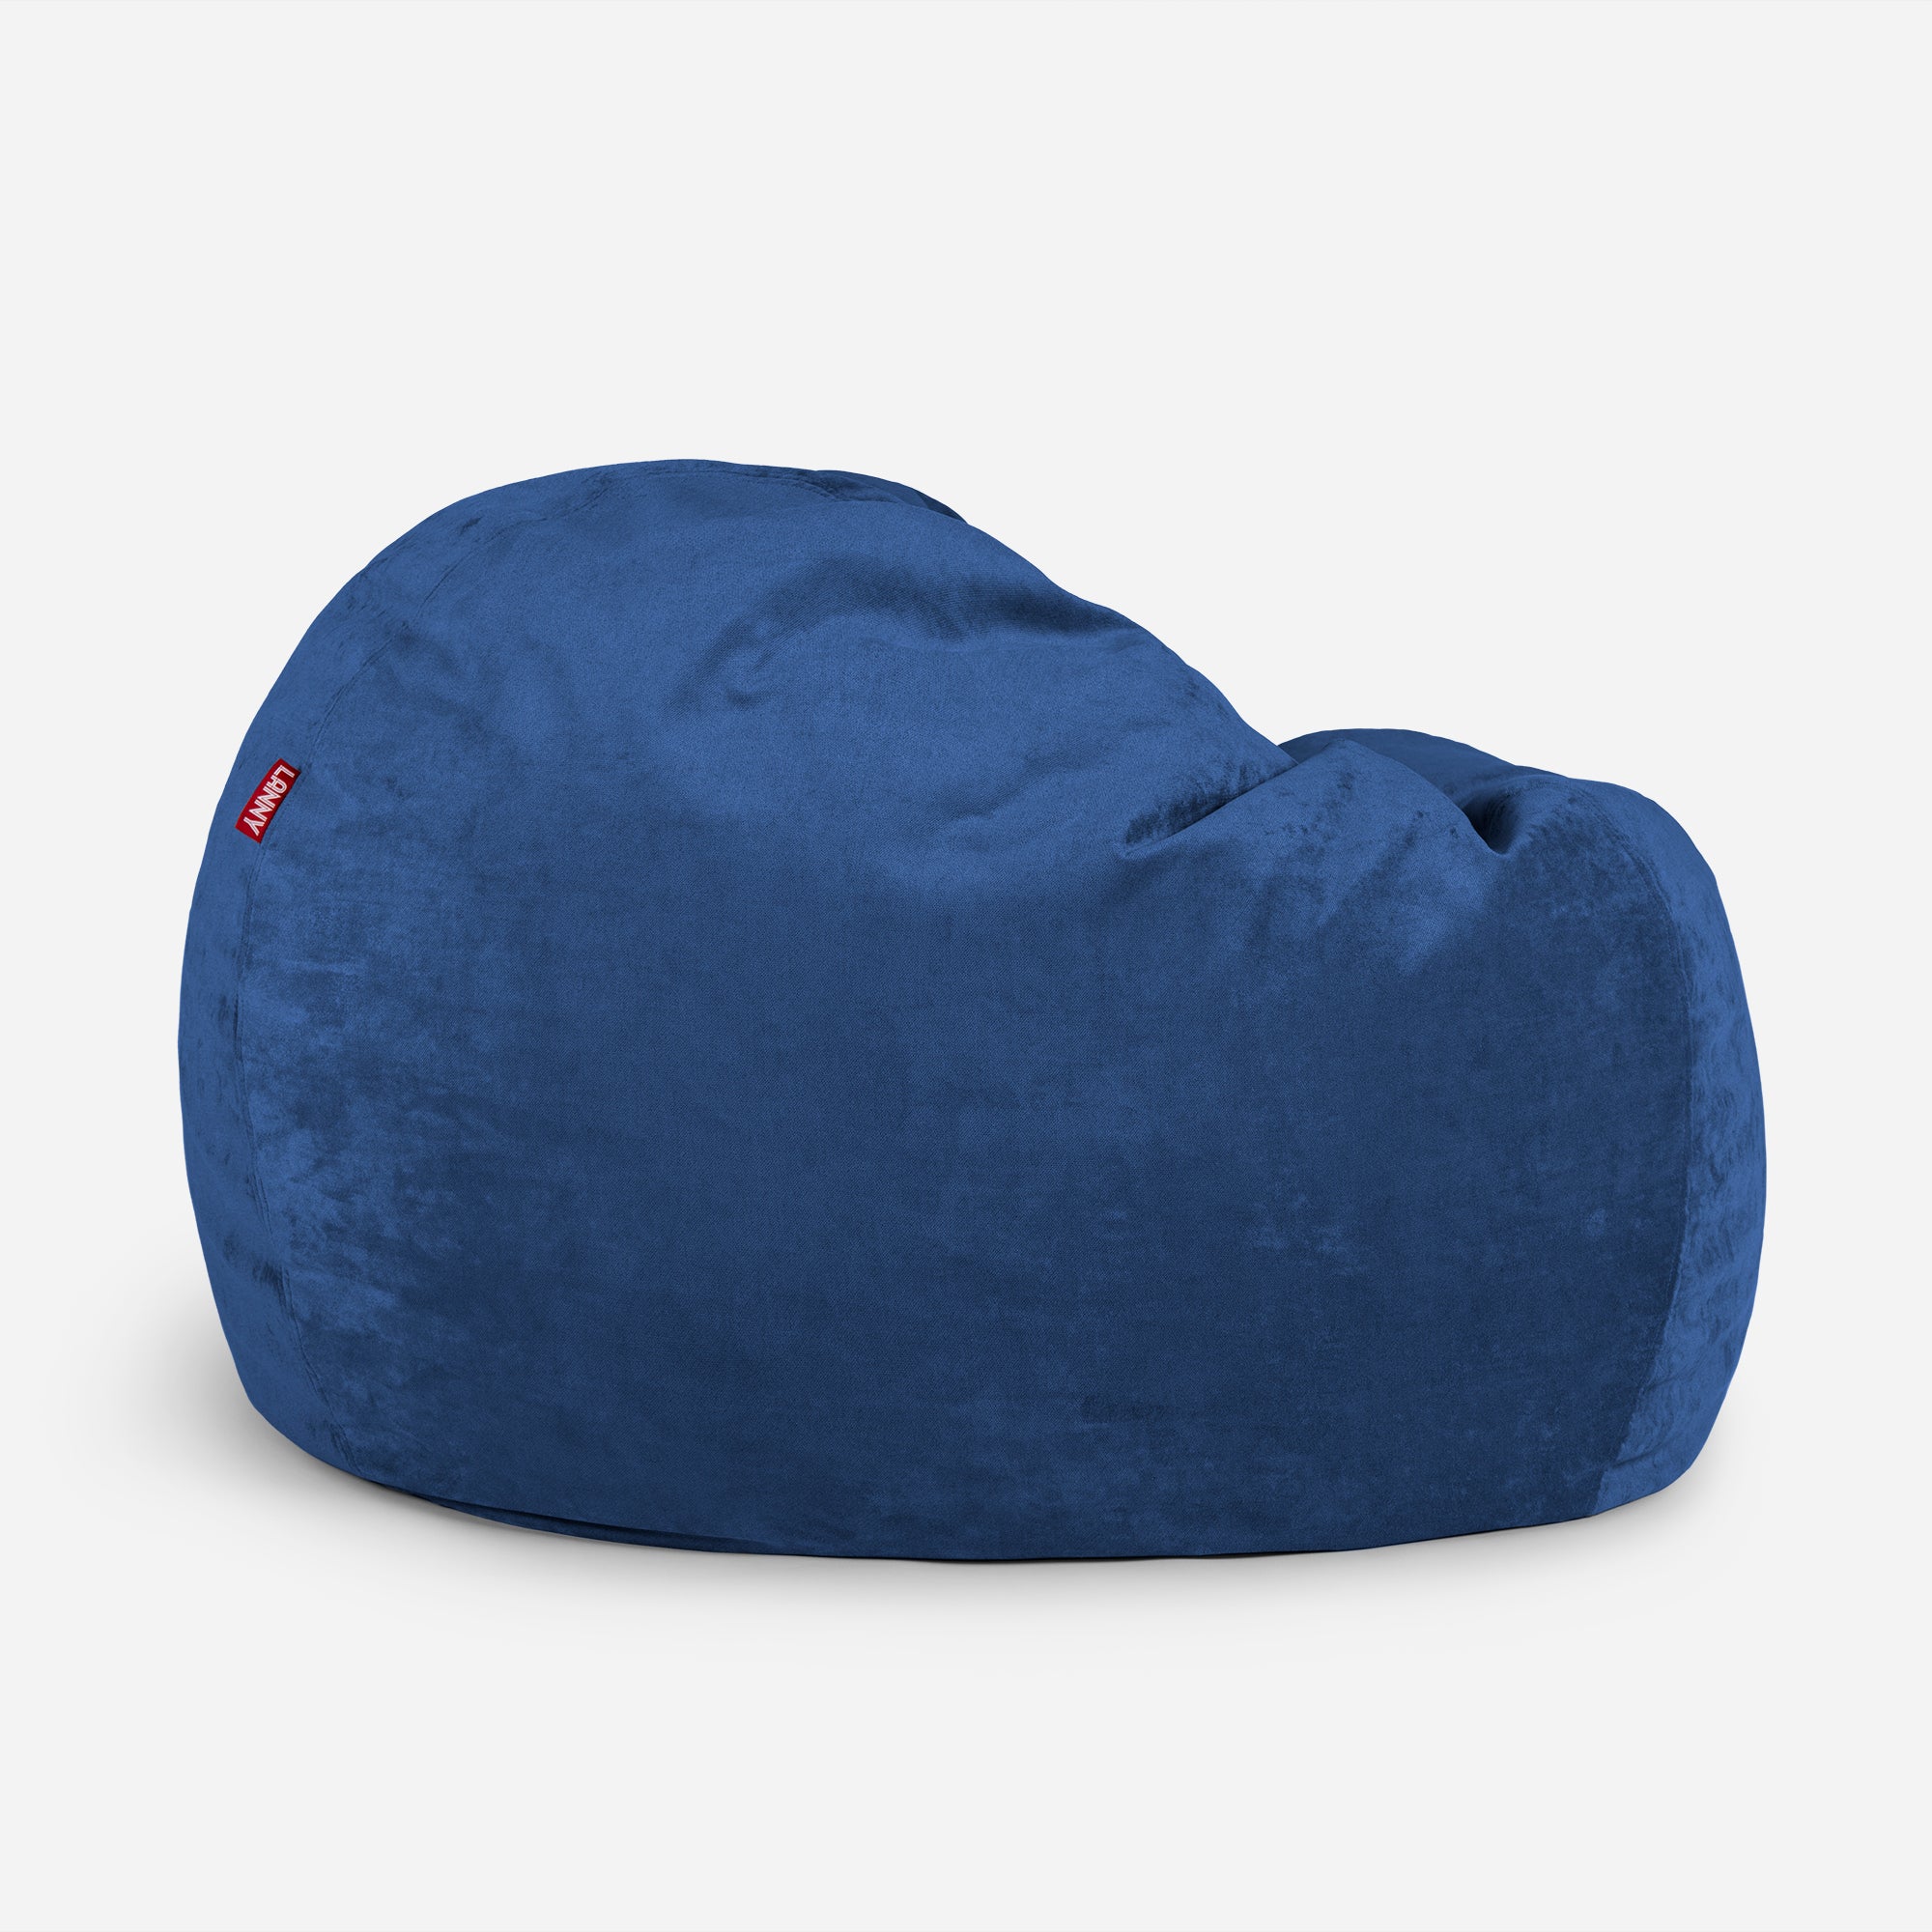 Sphere Aldo Blue Bean bag